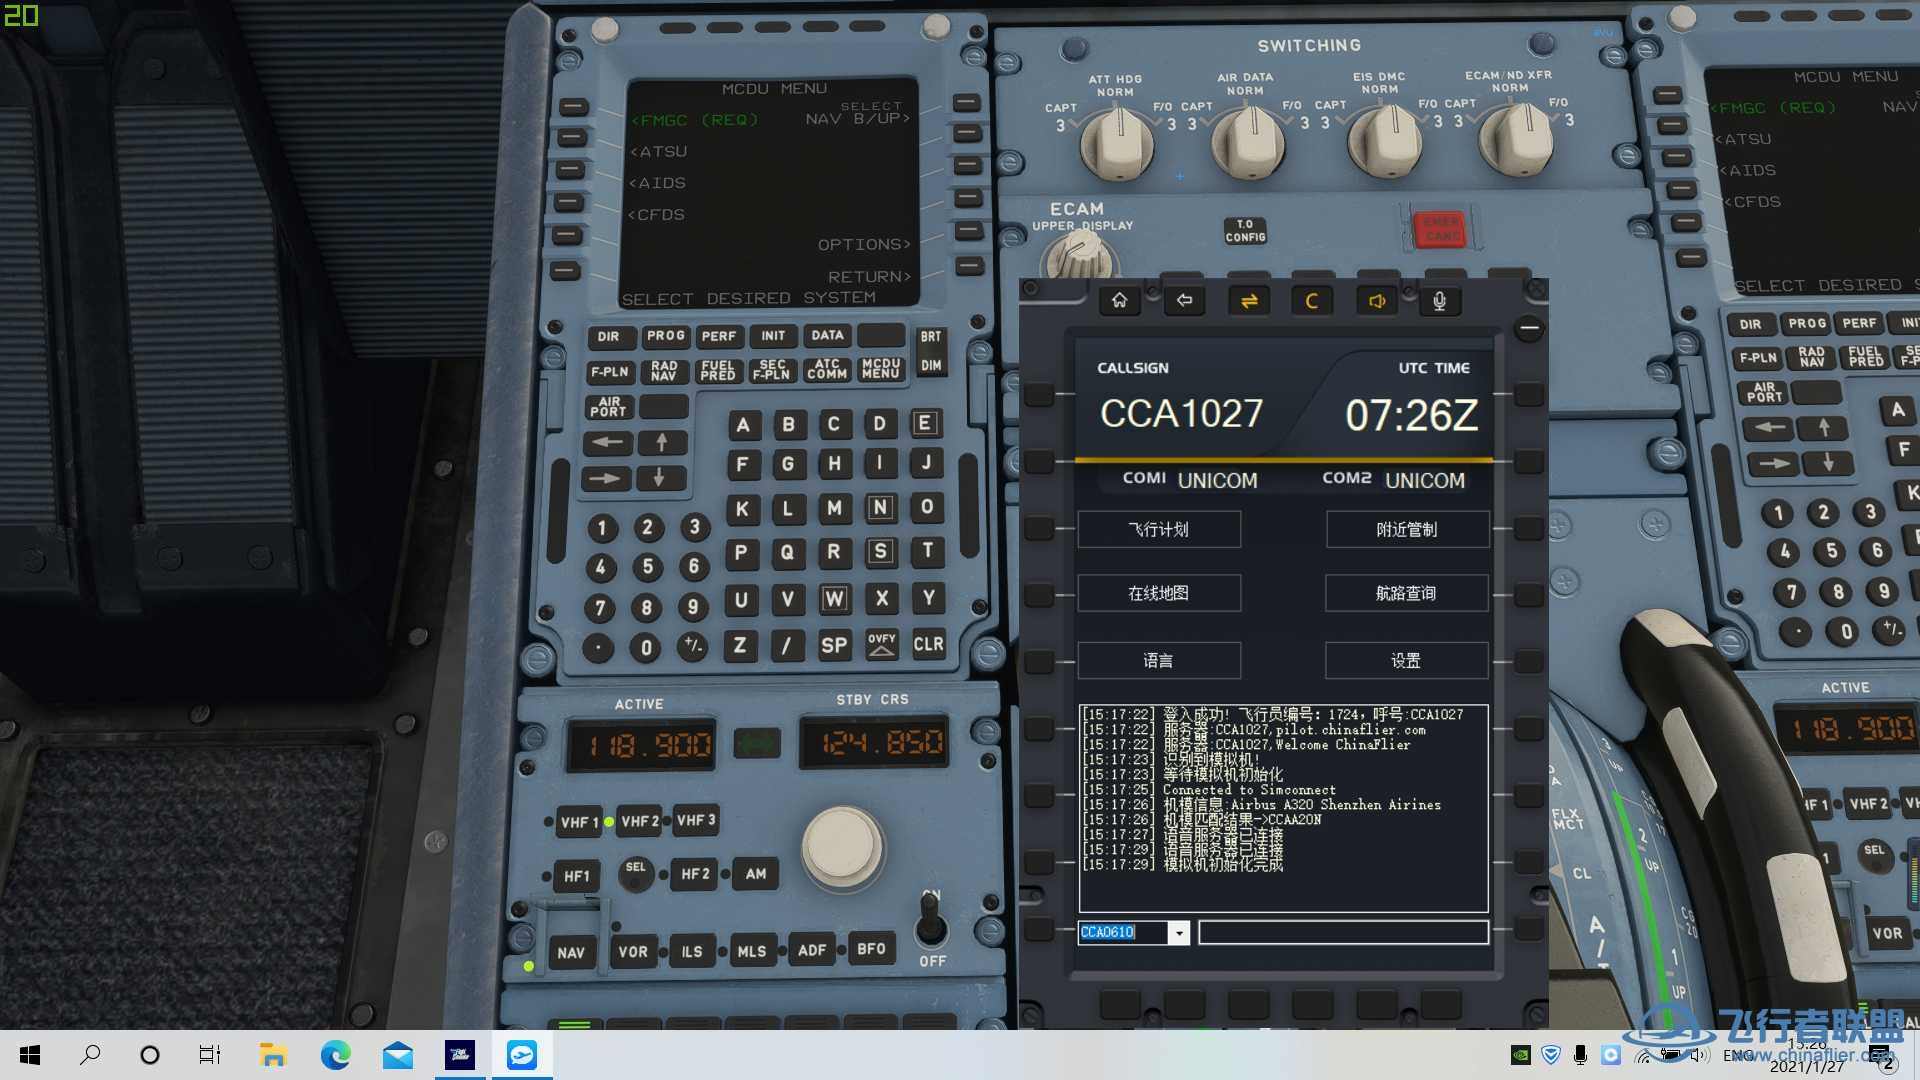 【求助】连飞软件COM1 COM2一直显示UNICOM-2449 